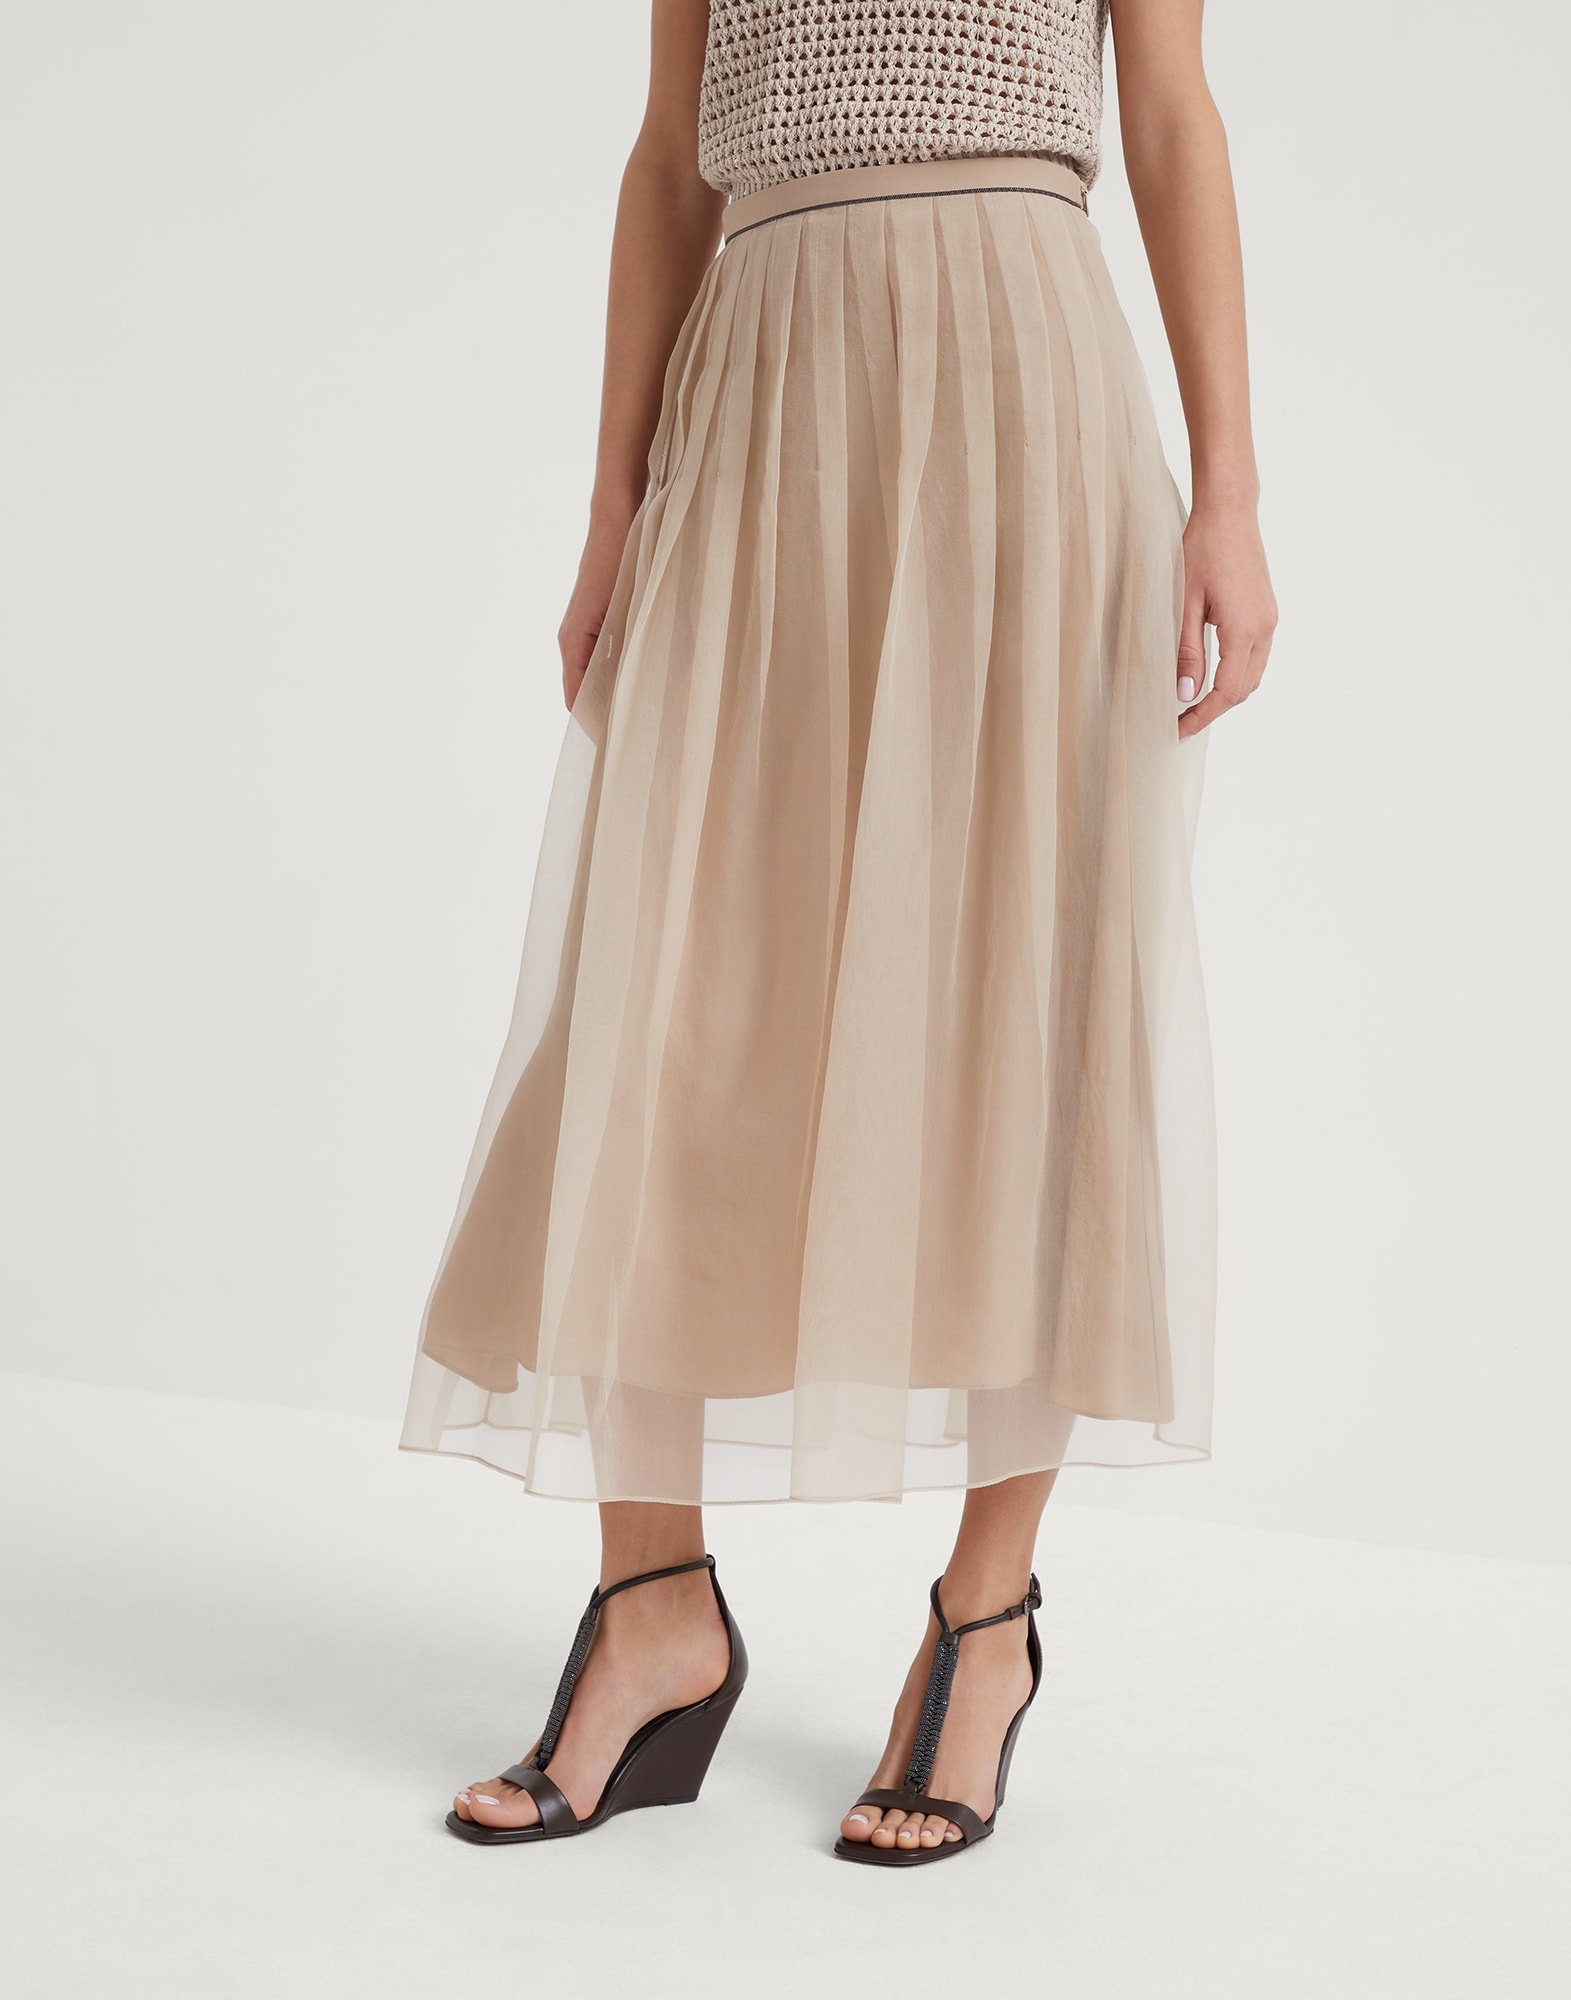 Crispy silk pleated midi skirt with shiny waistband - 1